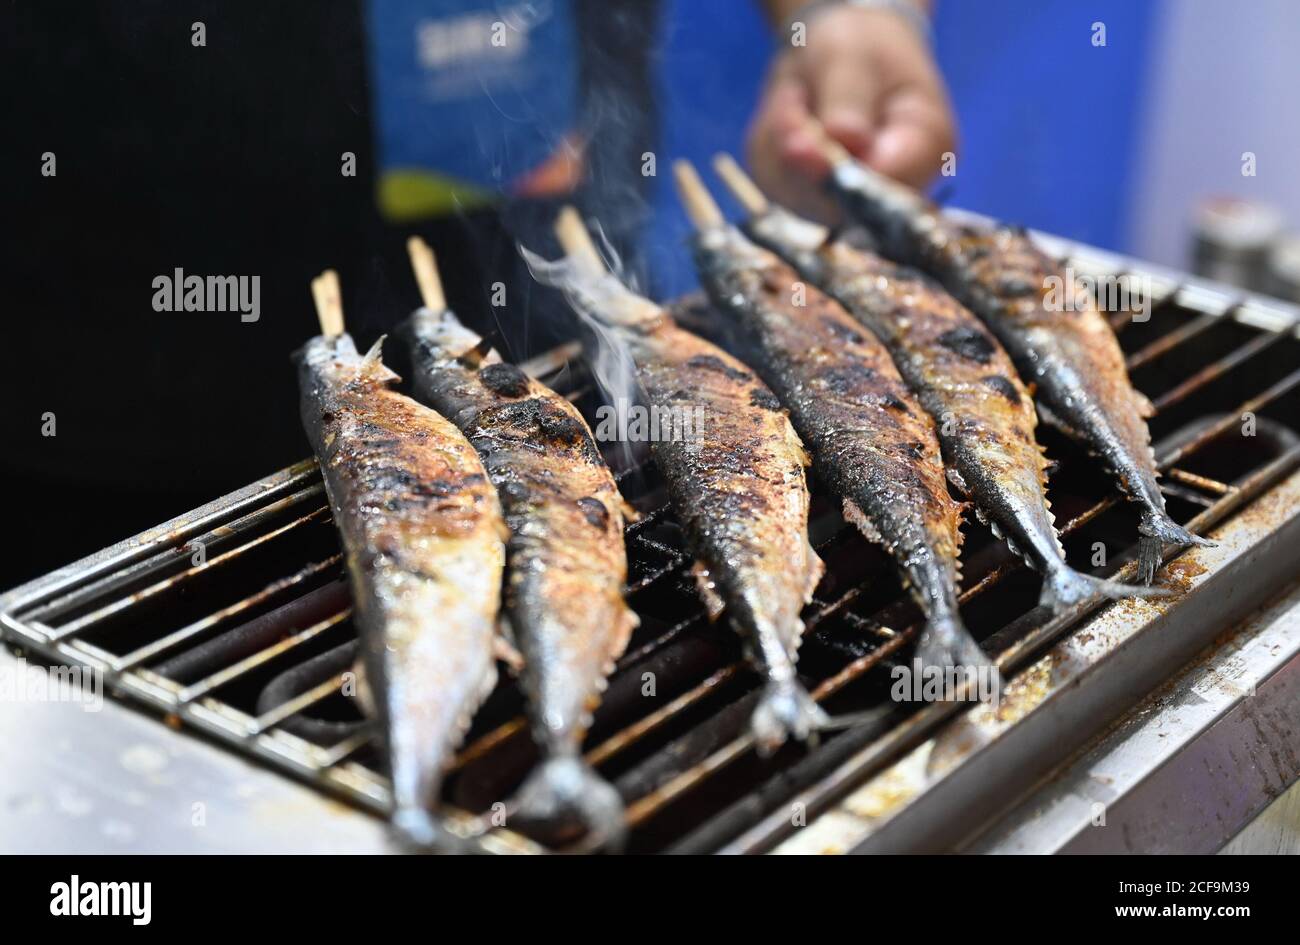 Fuzhou, la provincia cinese di Fujian. 4 Settembre 2020. Un espositore arrosta pesce per i visitatori alla China (Fuzhou) International Seafood & Fisheries Expo tenutasi a Fuzhou, capitale della provincia del Fujian del sud-est della Cina, il 4 settembre 2020. L'esposizione di quest'anno si è tenuta sia online che offline, con ingredienti di pesce, lavorazione di prodotti acquatici e altri spazi espositivi. Credit: LIN Shanchuan/Xinhua/Alamy Live News Foto Stock